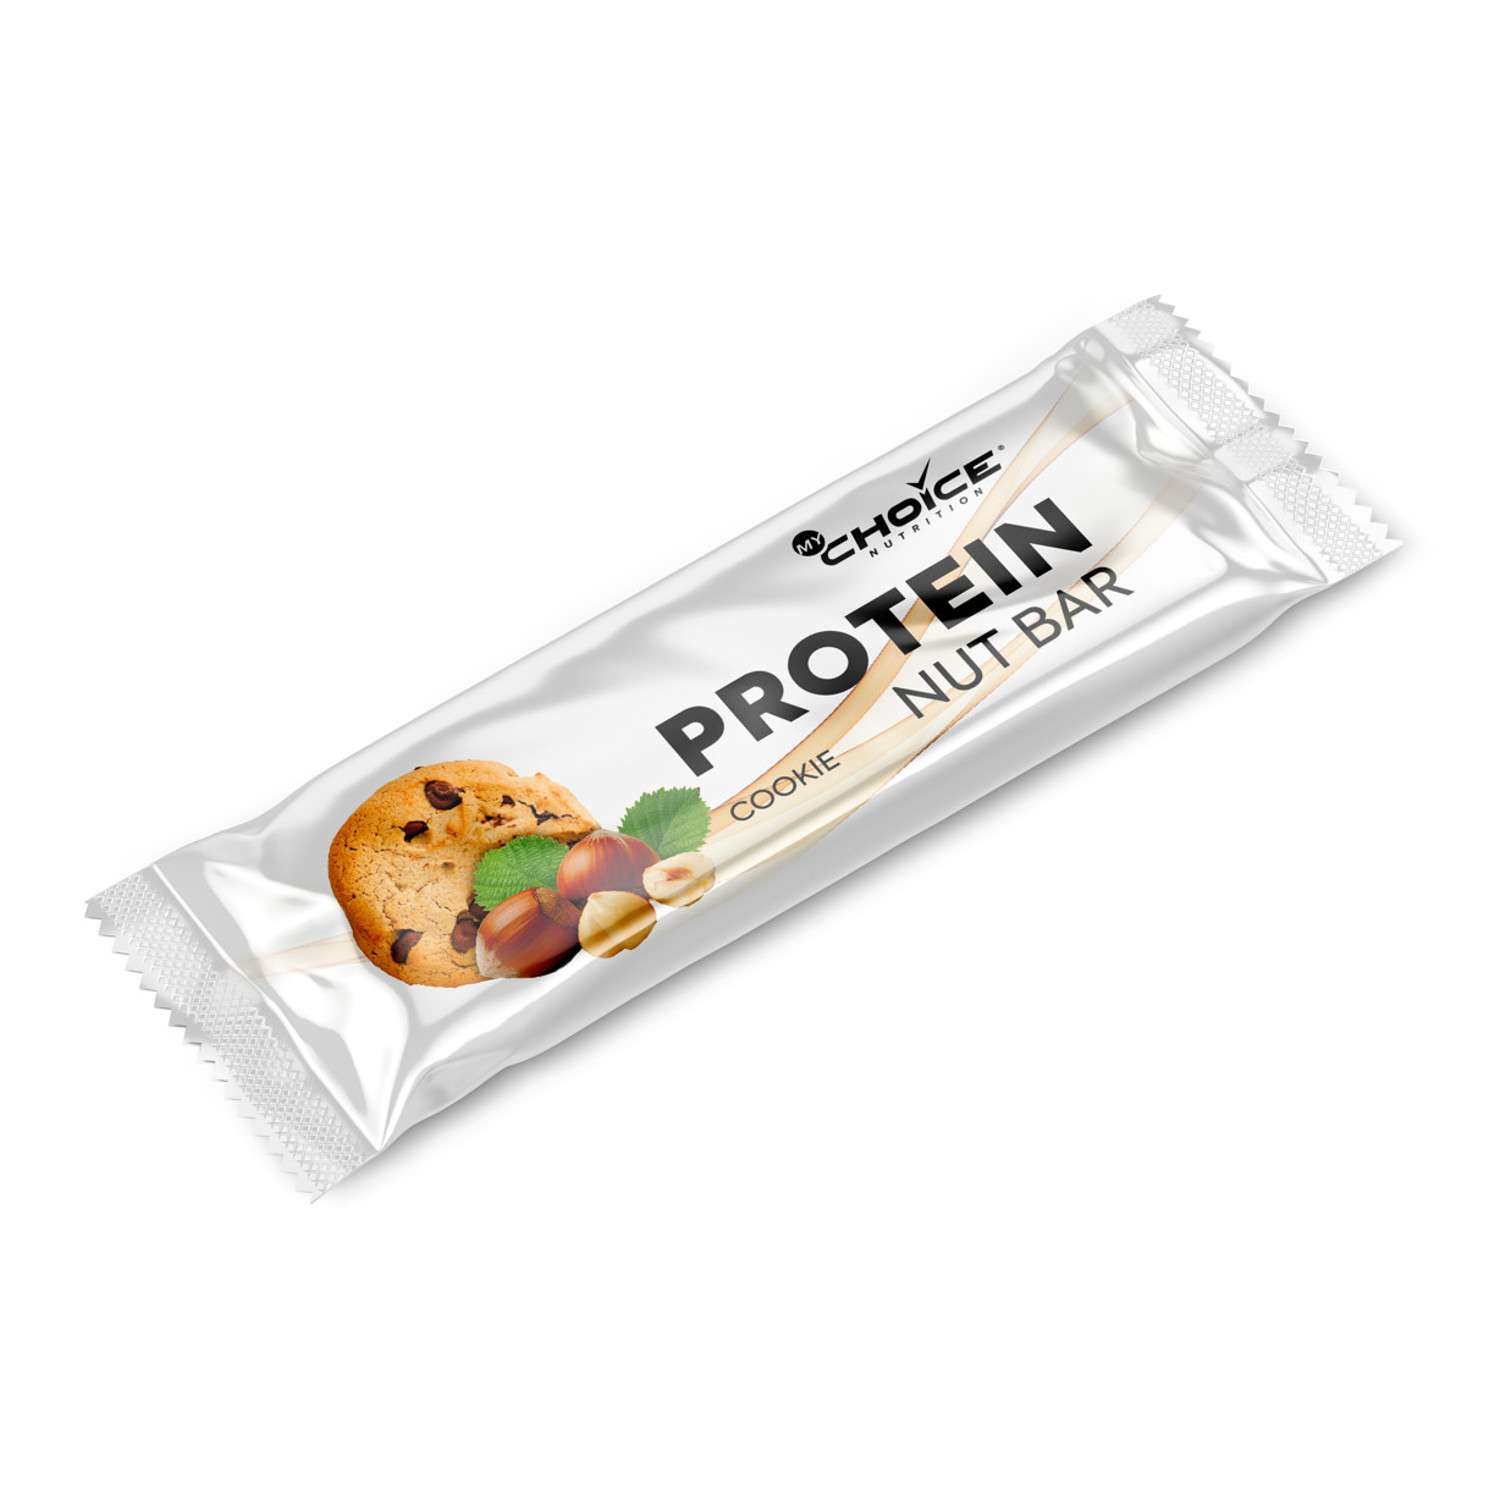 Изделия кондитерские MyChoice Nutrition Protein Nut Bar батончики печенье 20шт*40г - фото 2